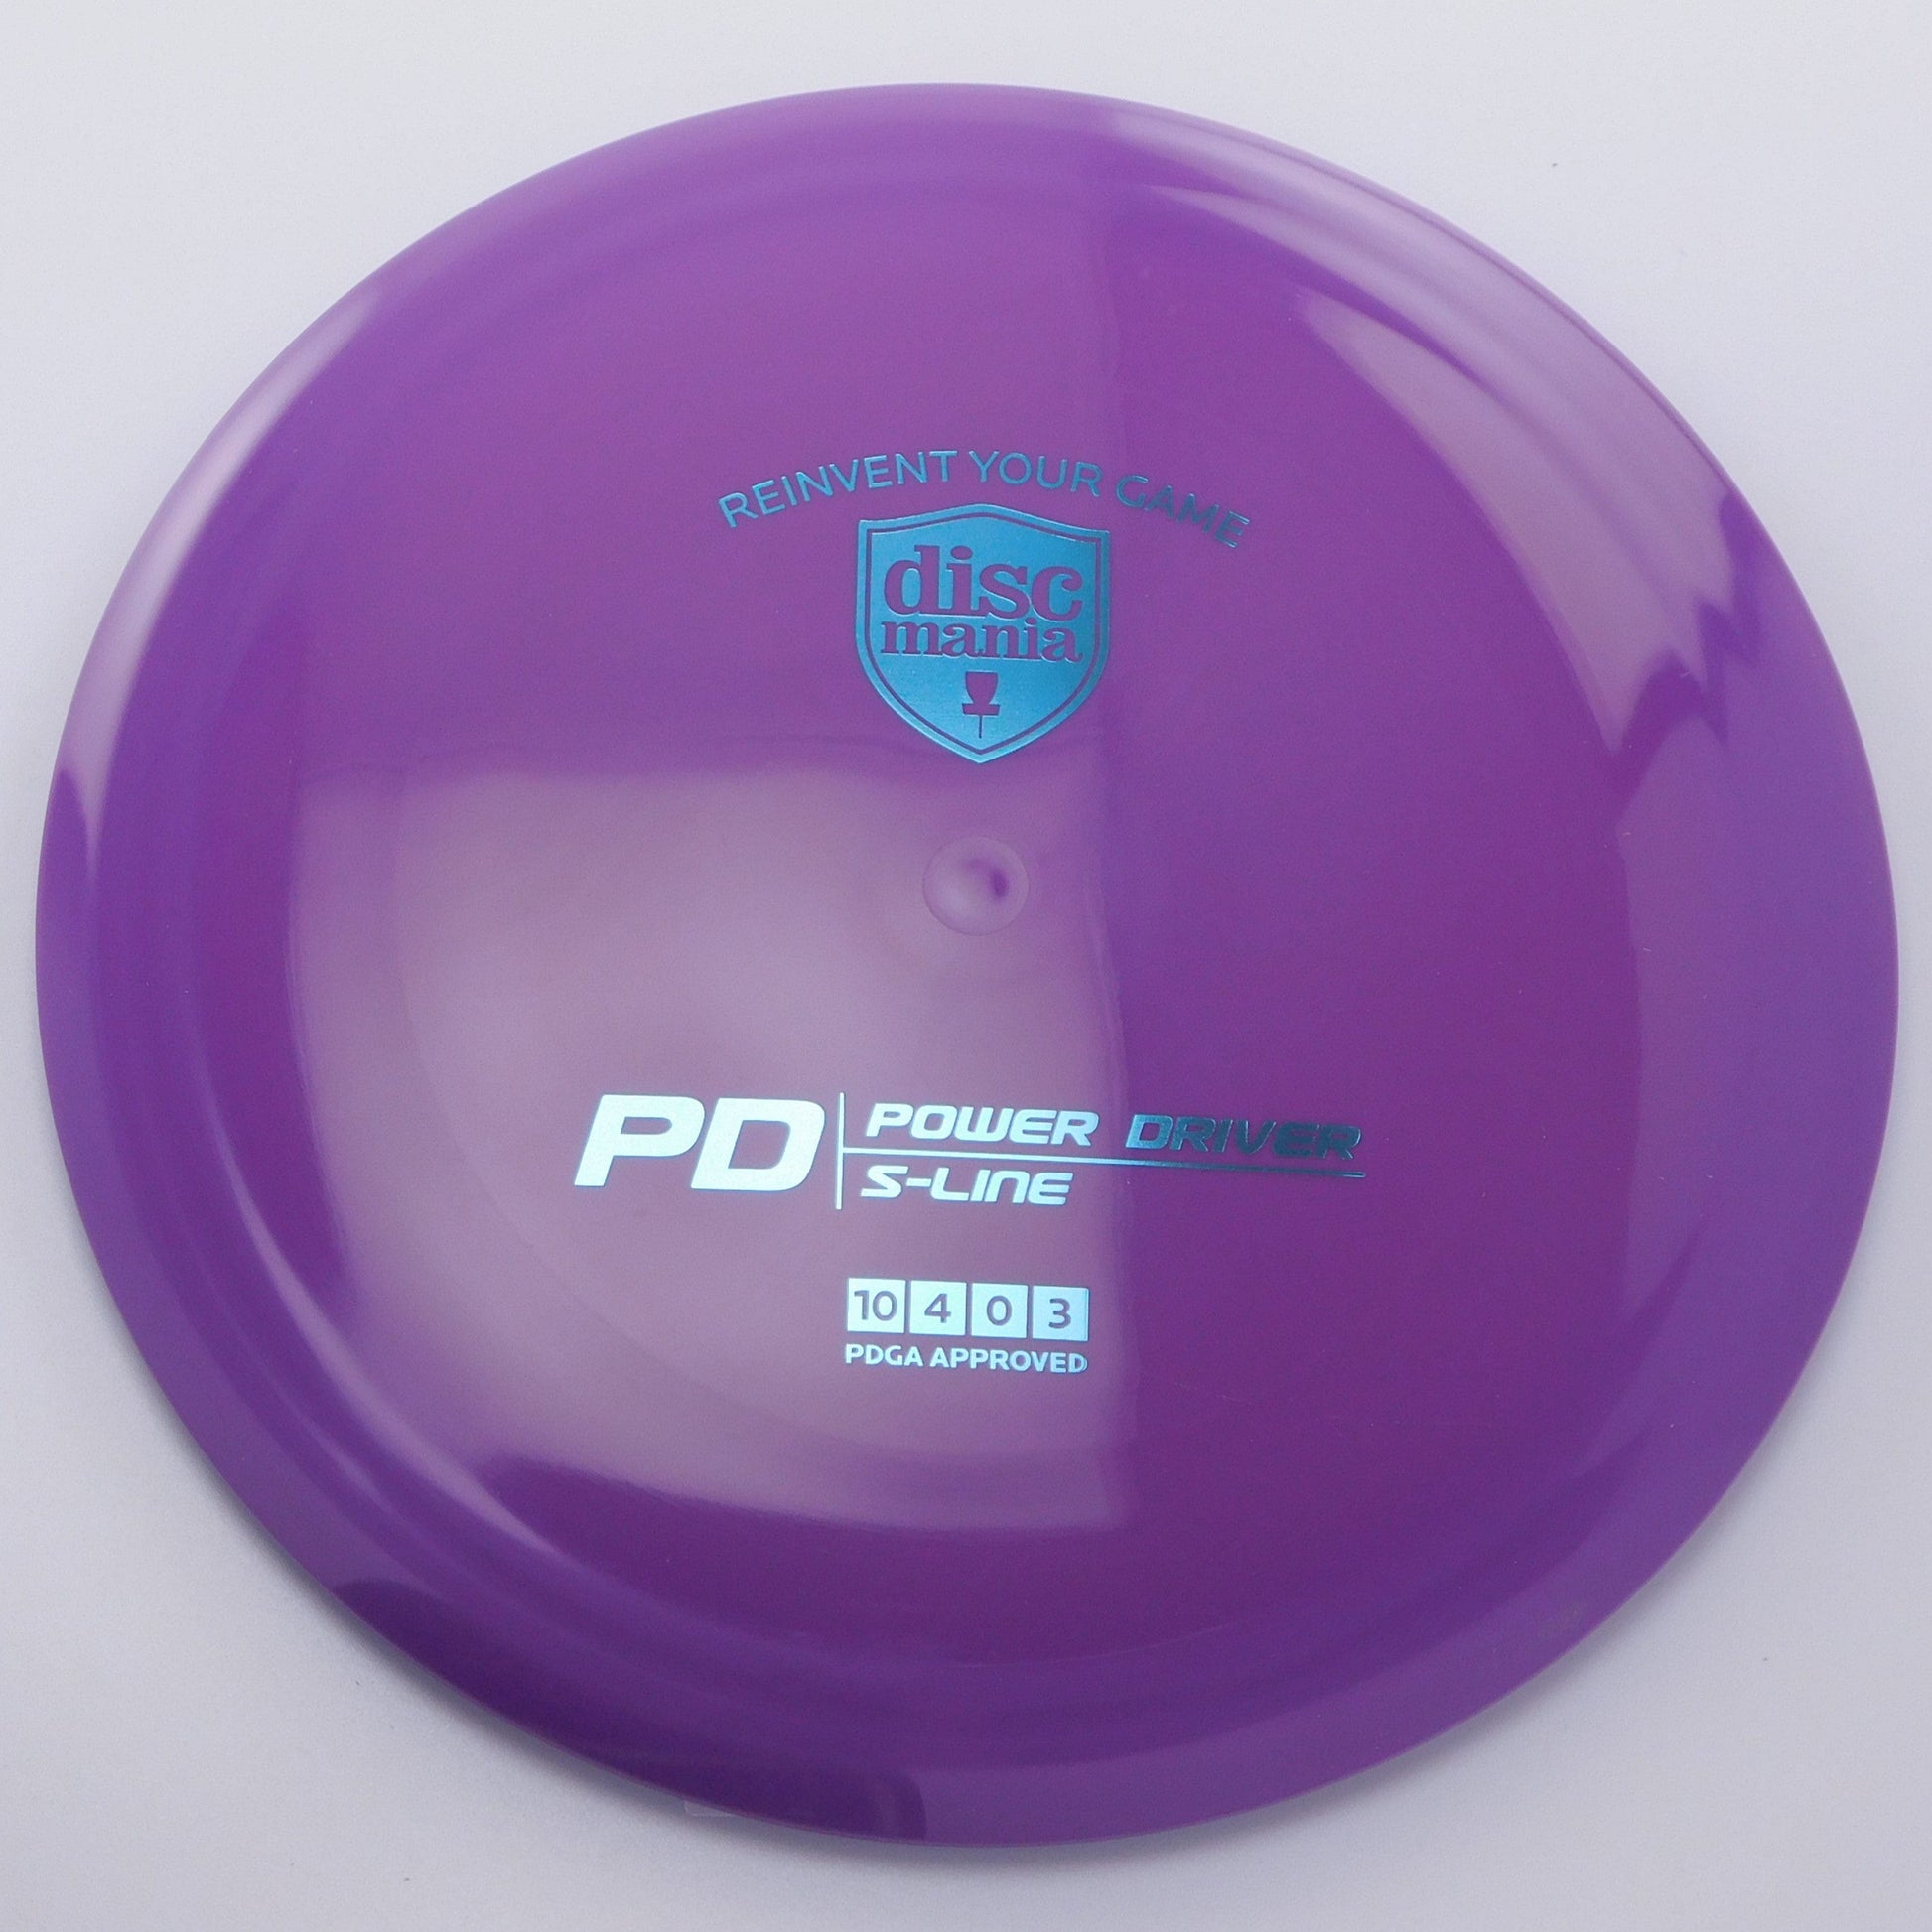 Discmania PD - S-line 10│4│0│3 173g - Purple - Discmania PD - S-Line - 100404